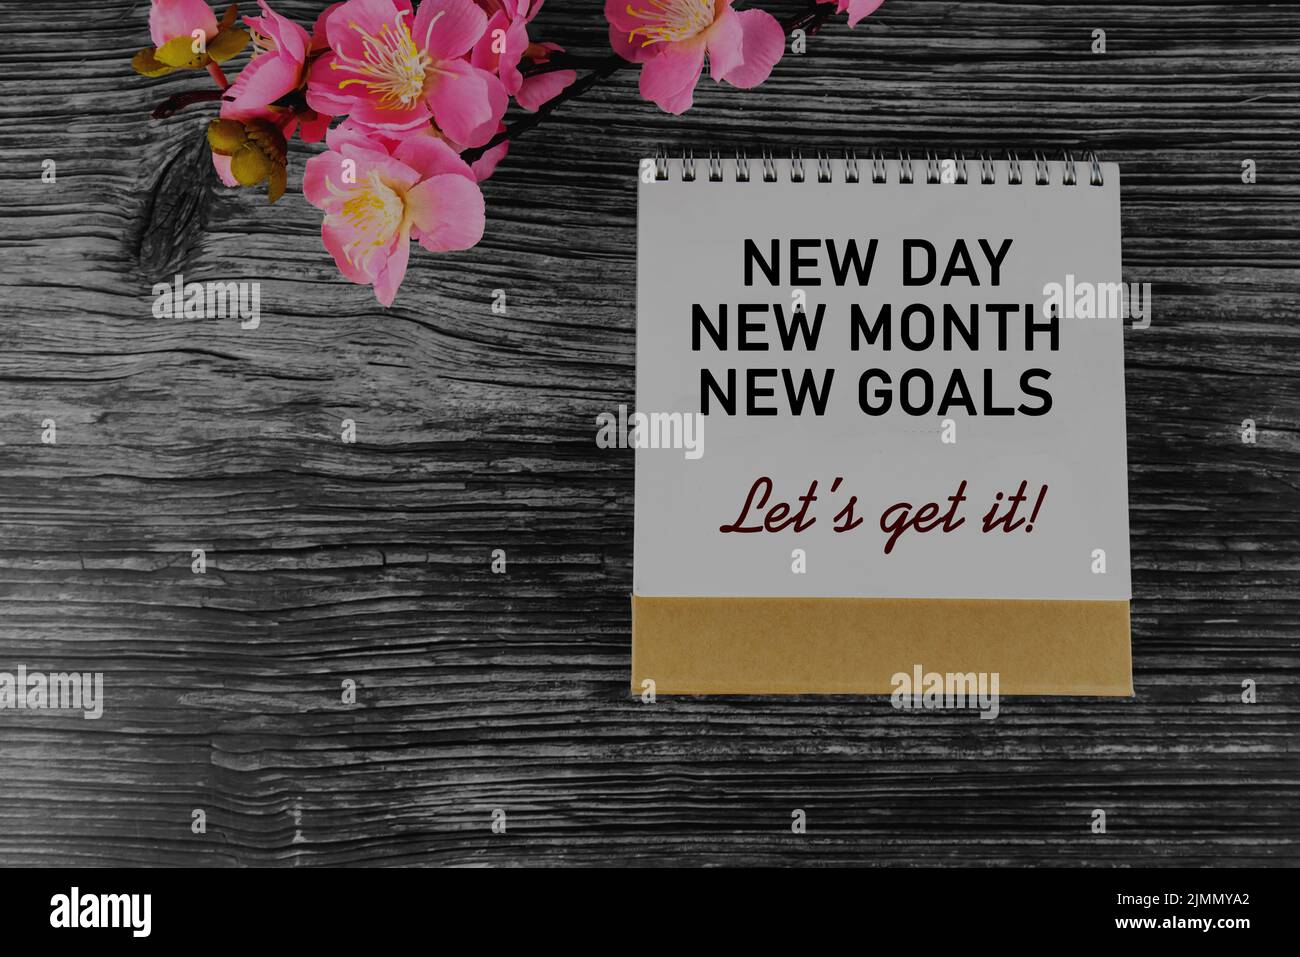 Messaggio positivo di motivazione aziendale sulla pagina di copertina del calendario - nuovo giorno, nuovo mese, nuovi obiettivi. Otteniamo. Con decorazione floreale rosa sul tavolo. Foto Stock